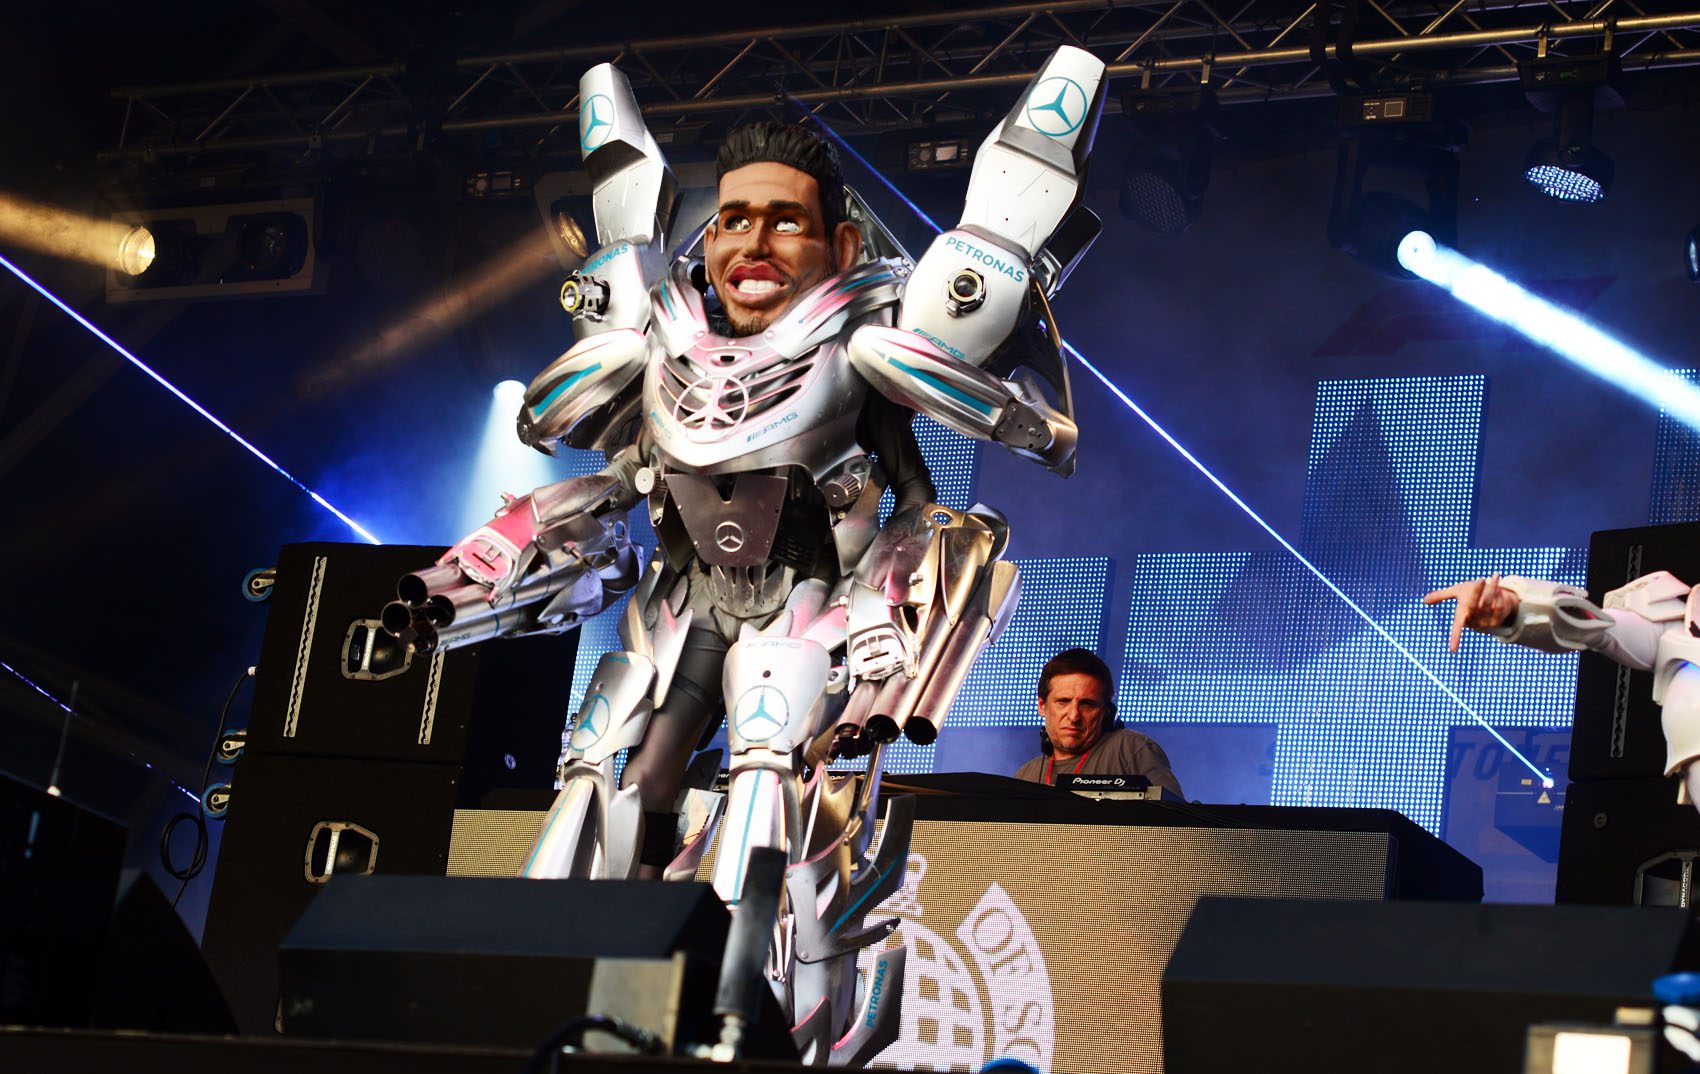 Lewis Hamilton Robot